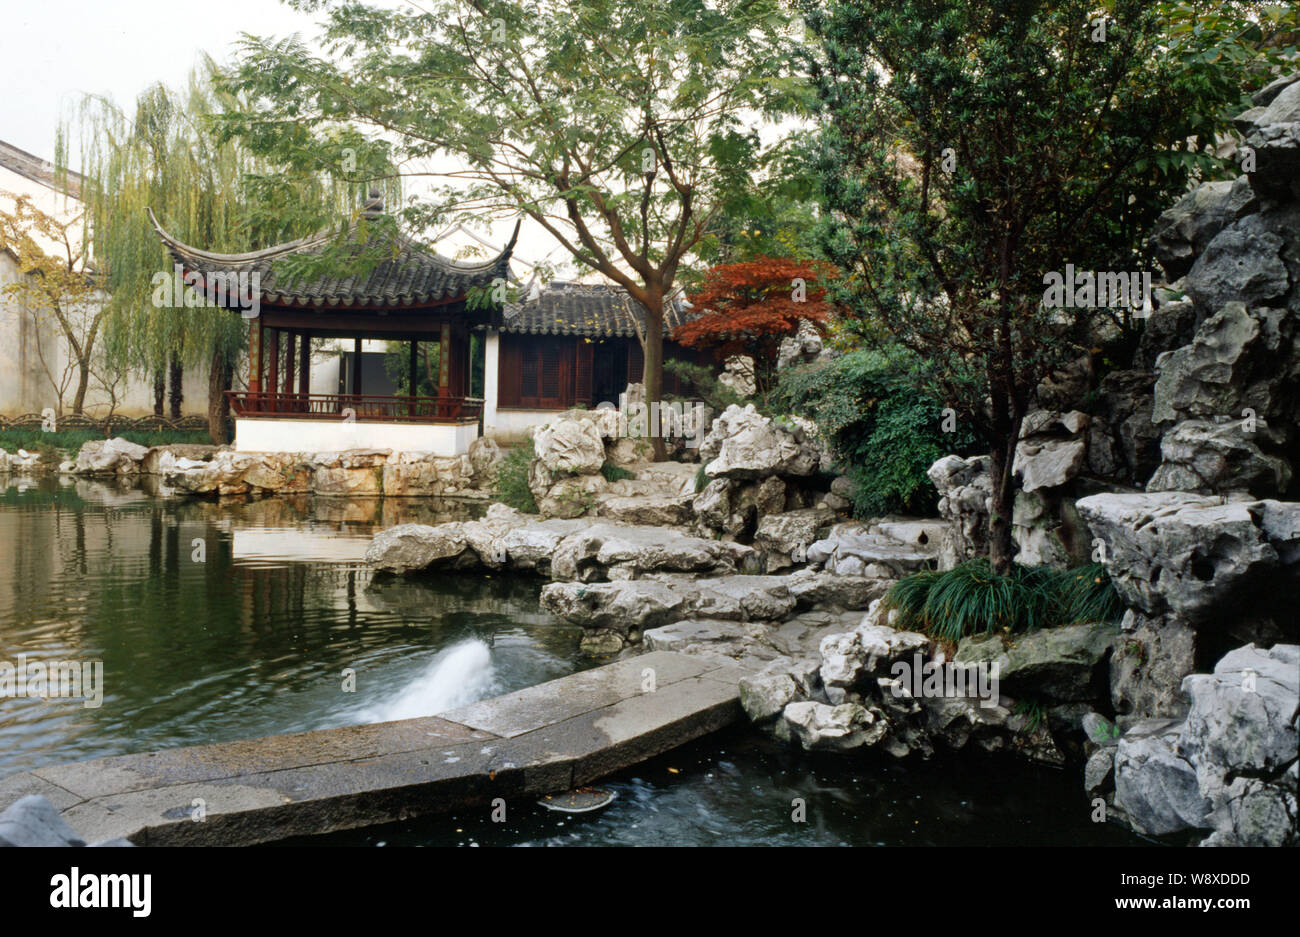 View of the Garden of Cultivation, or Yipu Garden, of Classical Gardens of Suzhou in Suzhou city, east Chinas Jiangsu province. Stock Photo